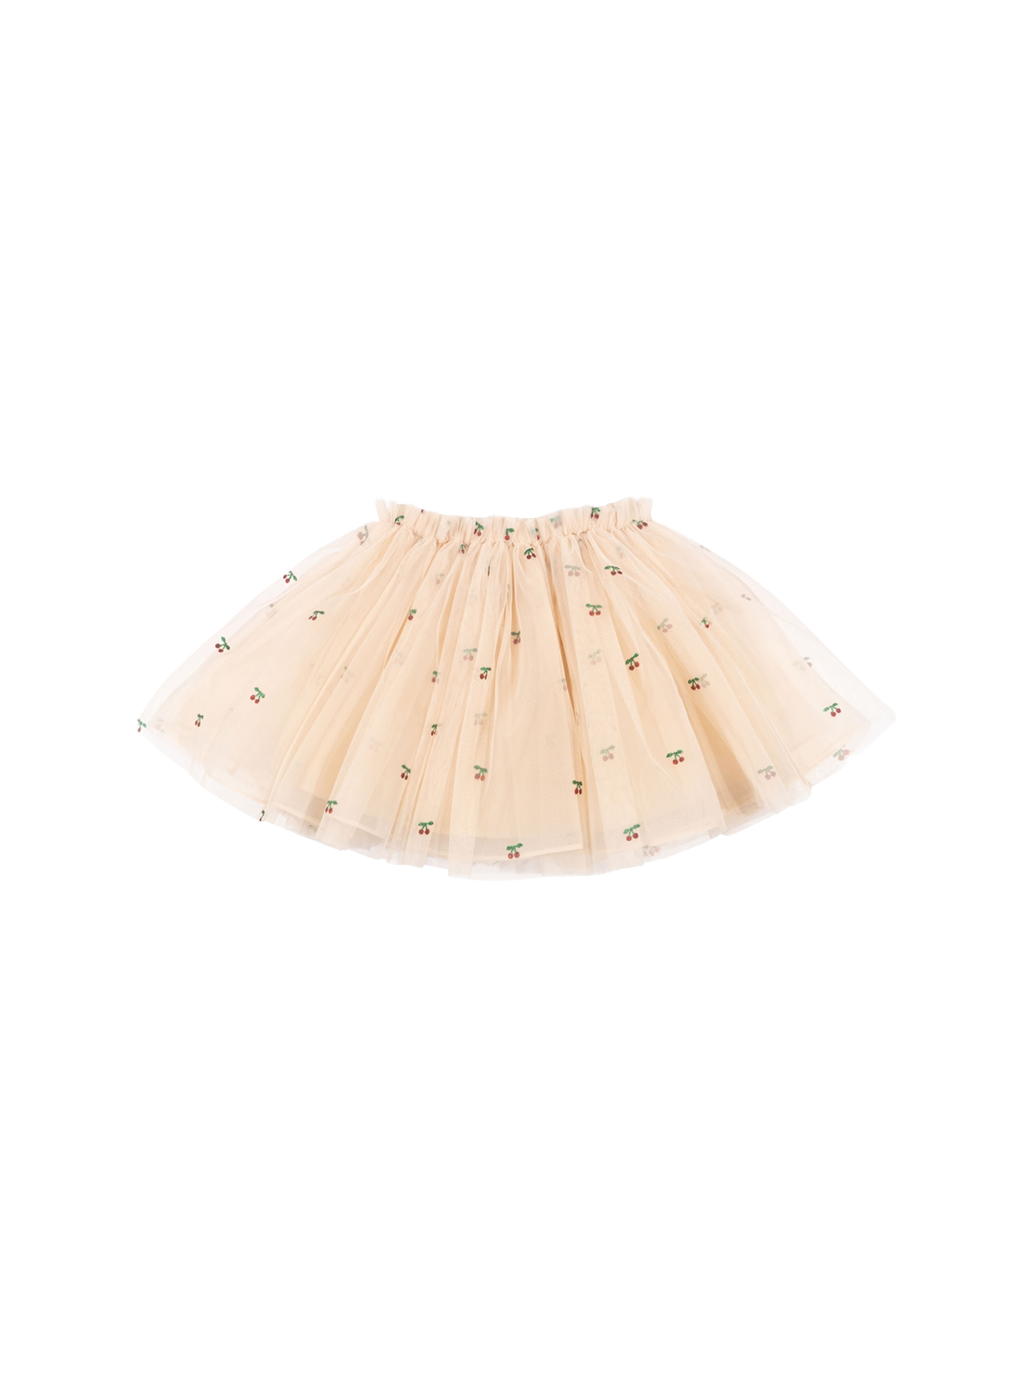 Fairy skirt